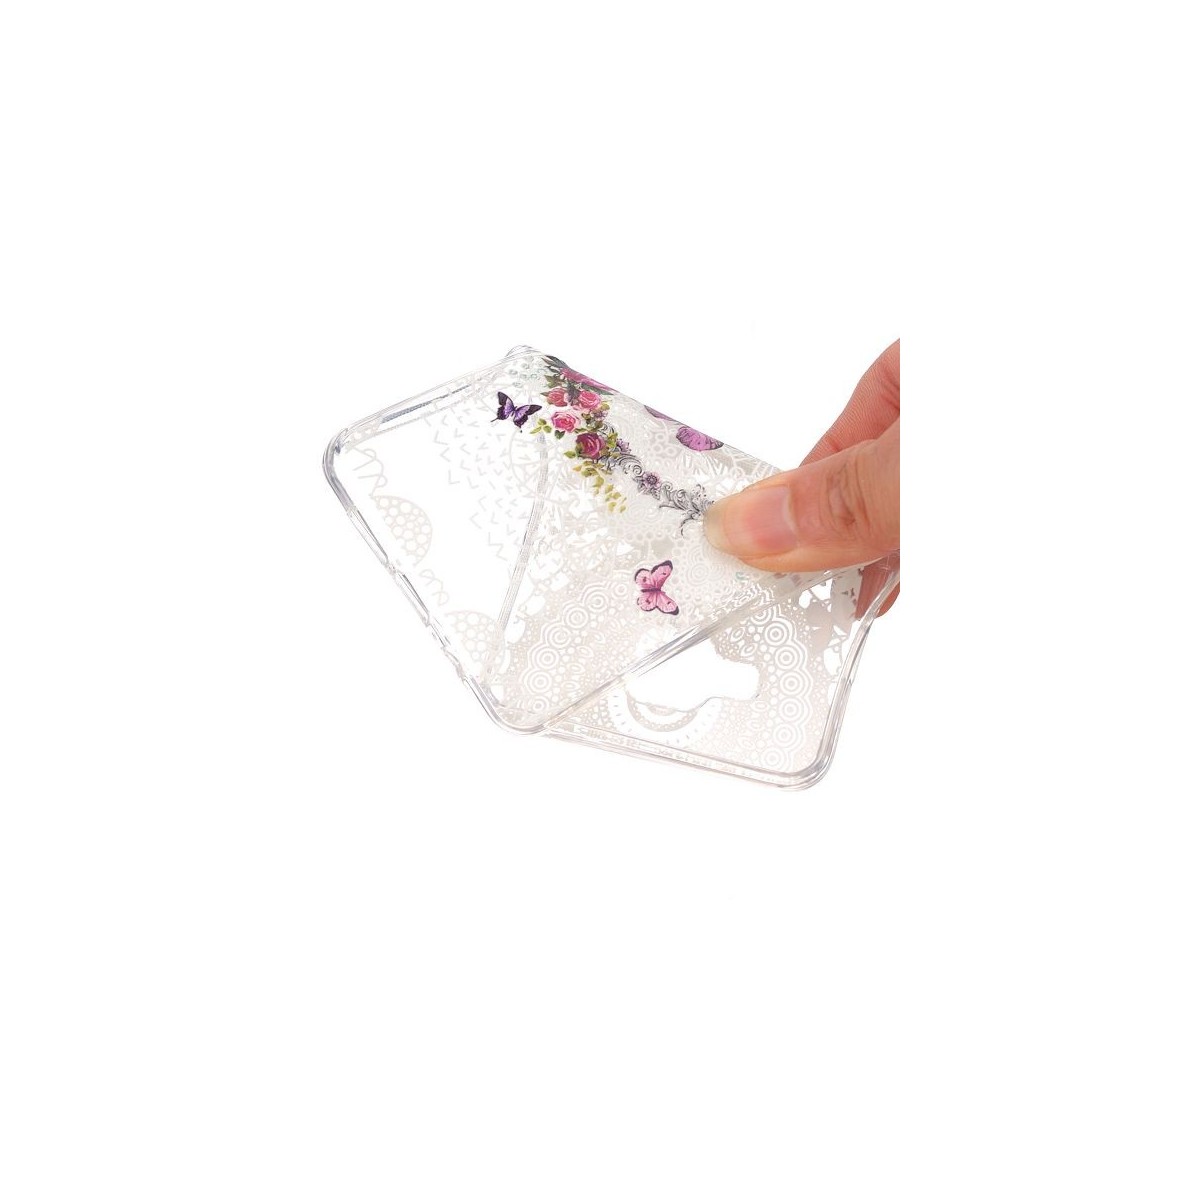 Coque Galaxy A5 (2016) Transparente souple motif Fleurs et Papillons Colorés - Crazy Kase